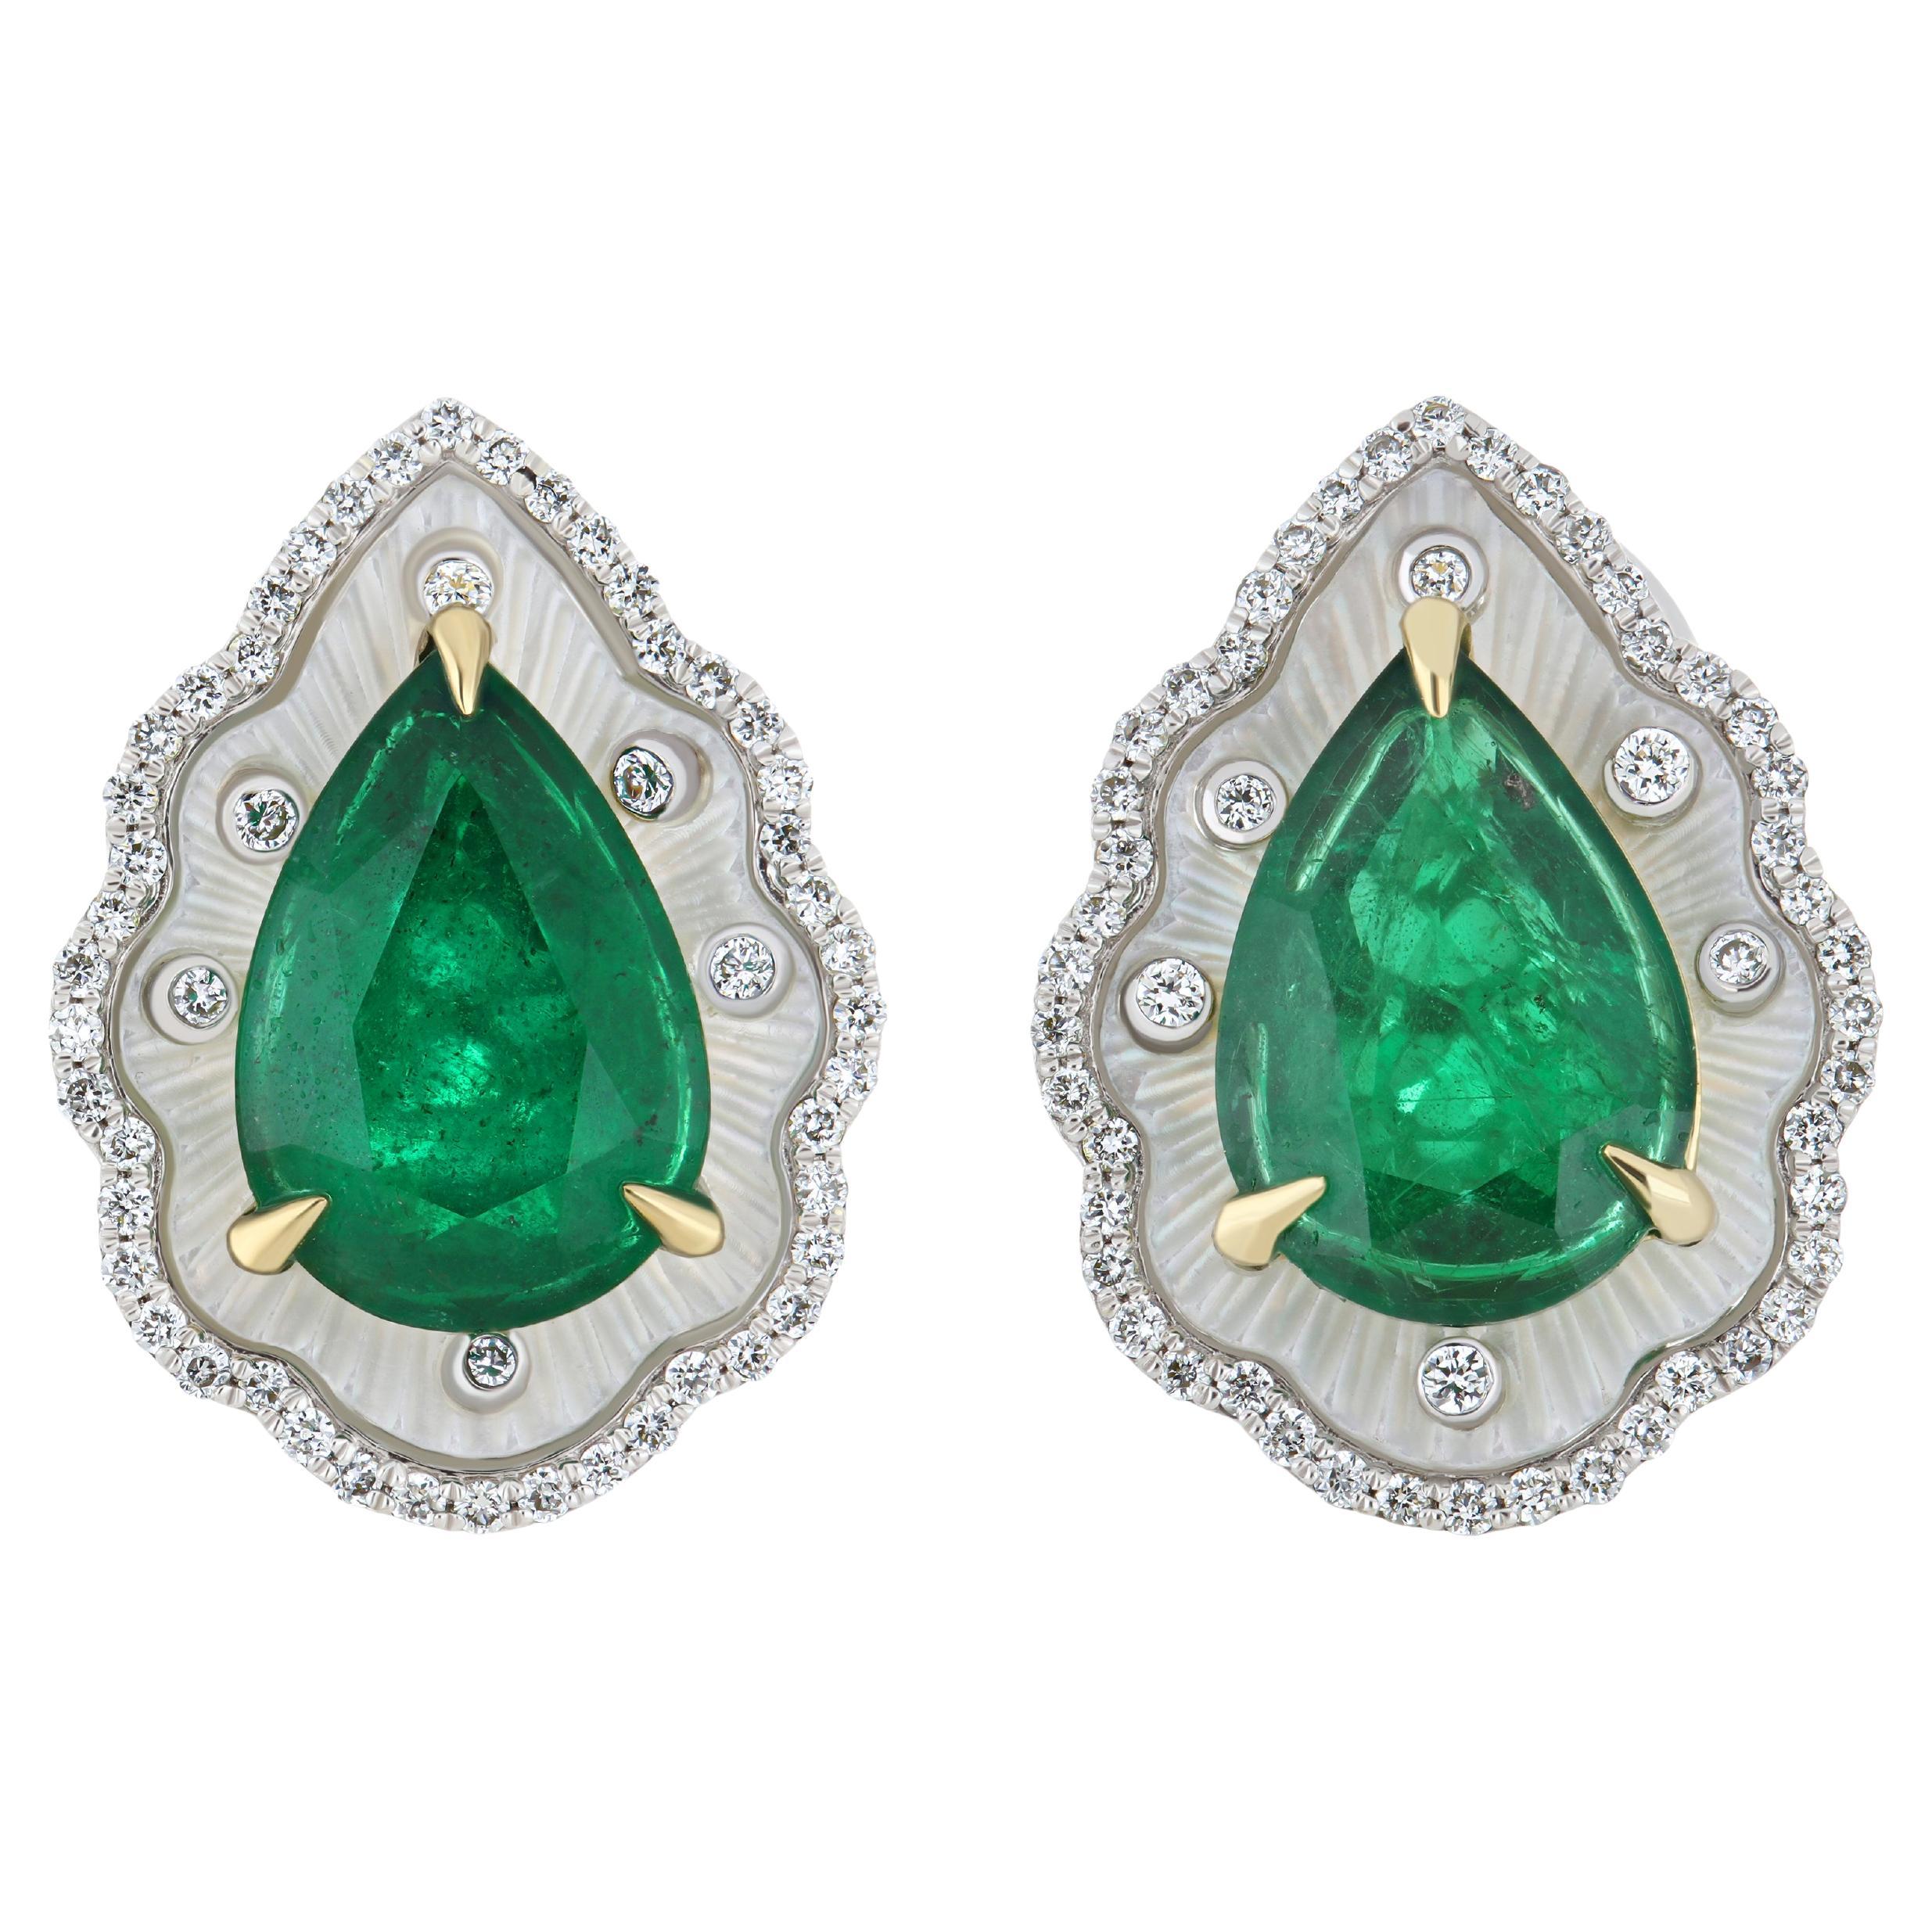 Emerald, MOP & Diamond in 18k White Gold Handcraft Earring for Christmas Gift